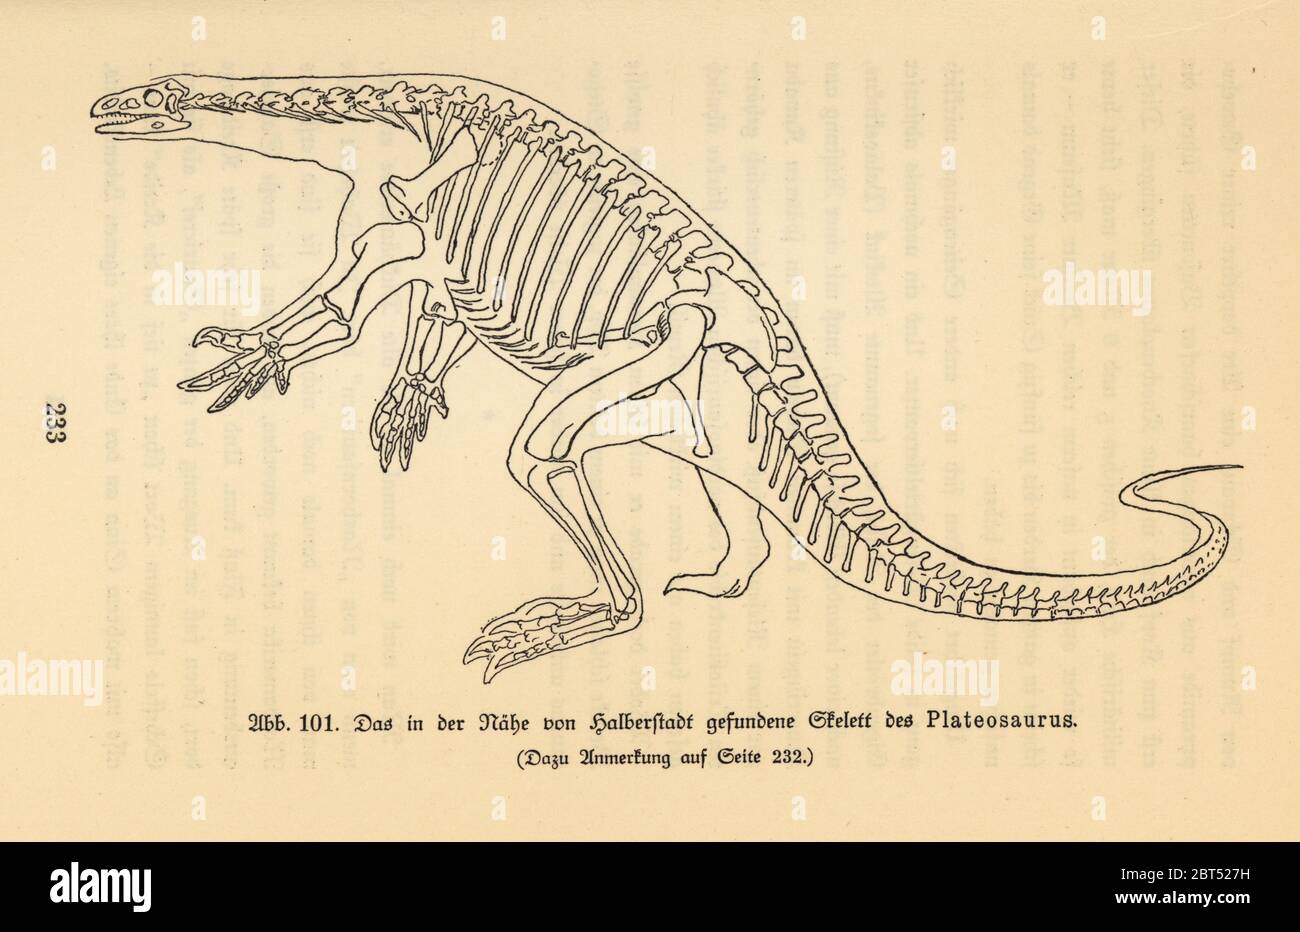 Reconstrucción de un dinosaurio depredador extinto, Plateosaurus, período Triásico Tardío, basado en un esqueleto fósil encontrado en Halberstadt. Ilustración de Wilhelm Bolsches Das Leben der Urwelt, Prehistoric Life, Georg Dollheimer, Leipzig, 1932. Foto de stock